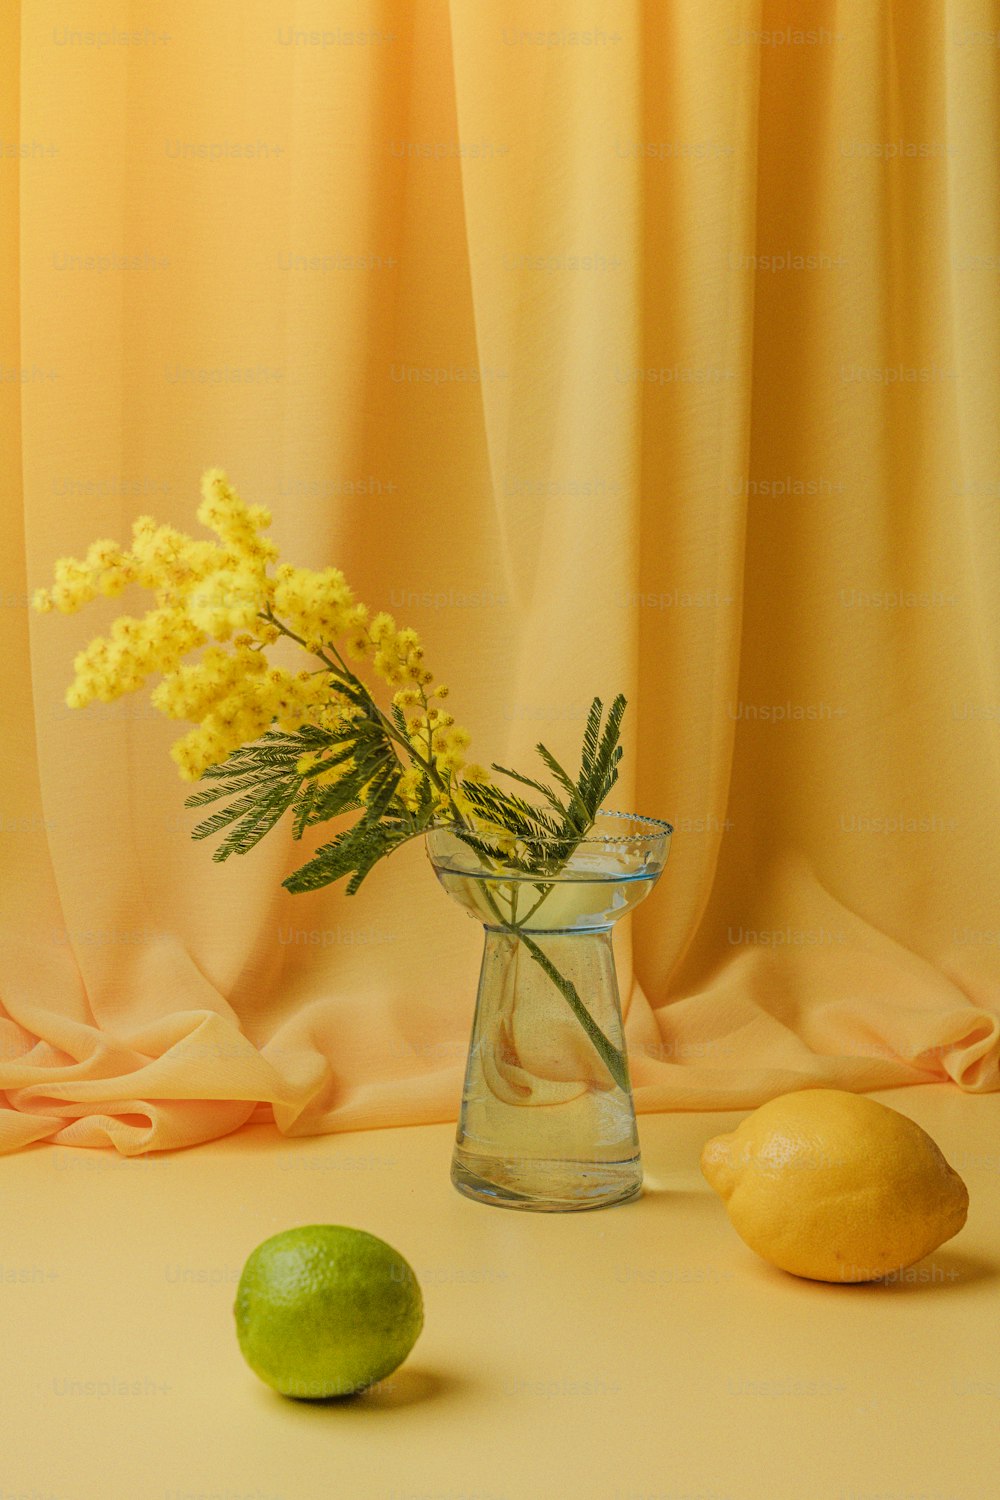 Un jarrón de vidrio lleno de flores amarillas junto a limones